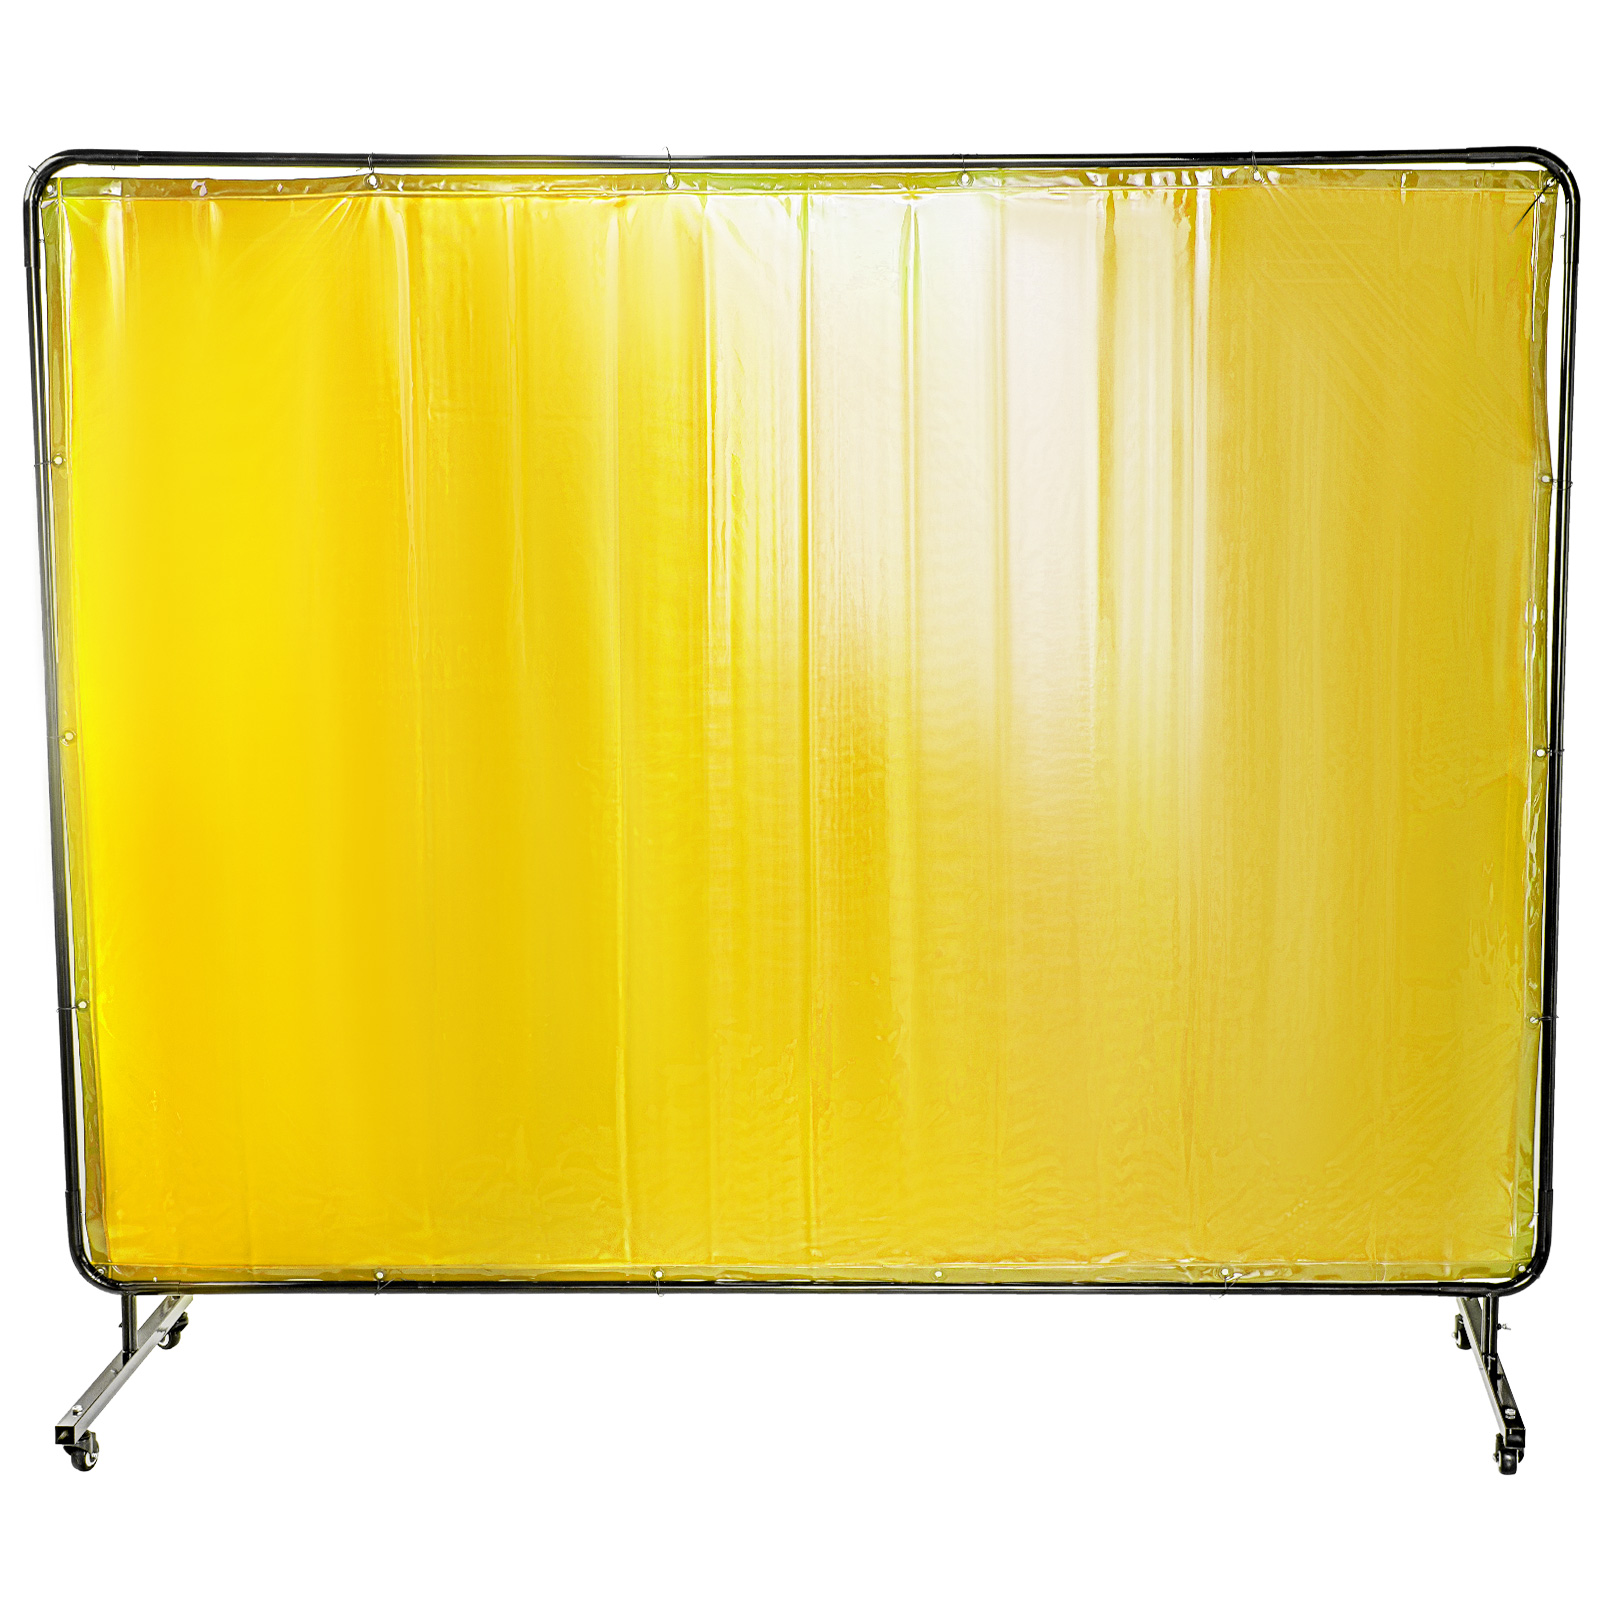 welding screen curtain